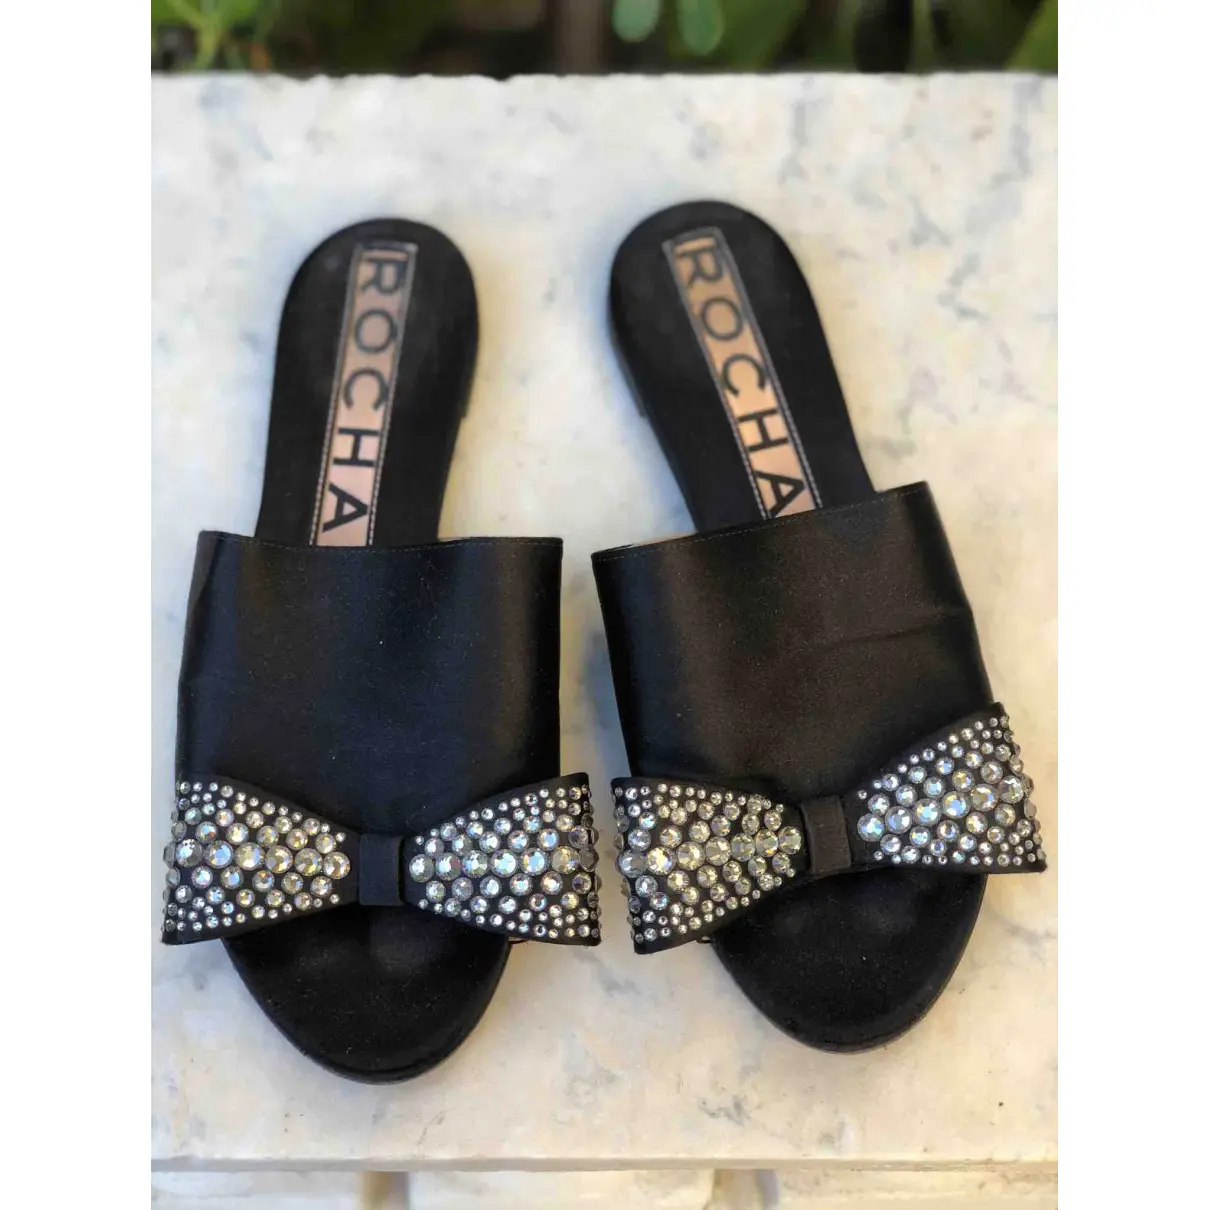 Buy Rochas Cloth sandals online